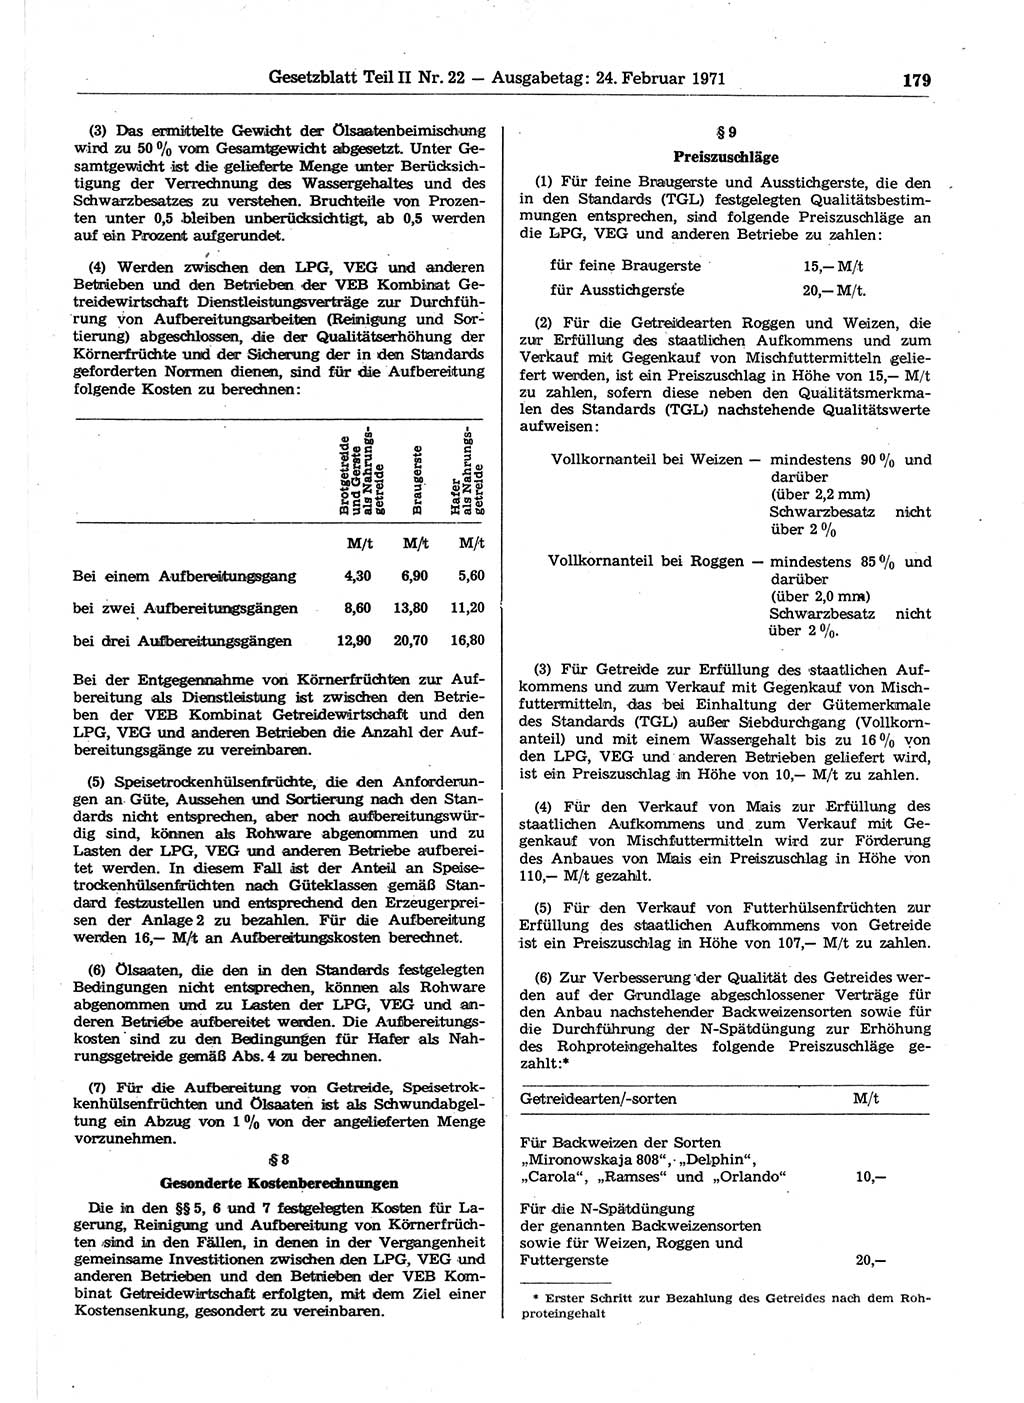 Gesetzblatt (GBl.) der Deutschen Demokratischen Republik (DDR) Teil ⅠⅠ 1971, Seite 179 (GBl. DDR ⅠⅠ 1971, S. 179)